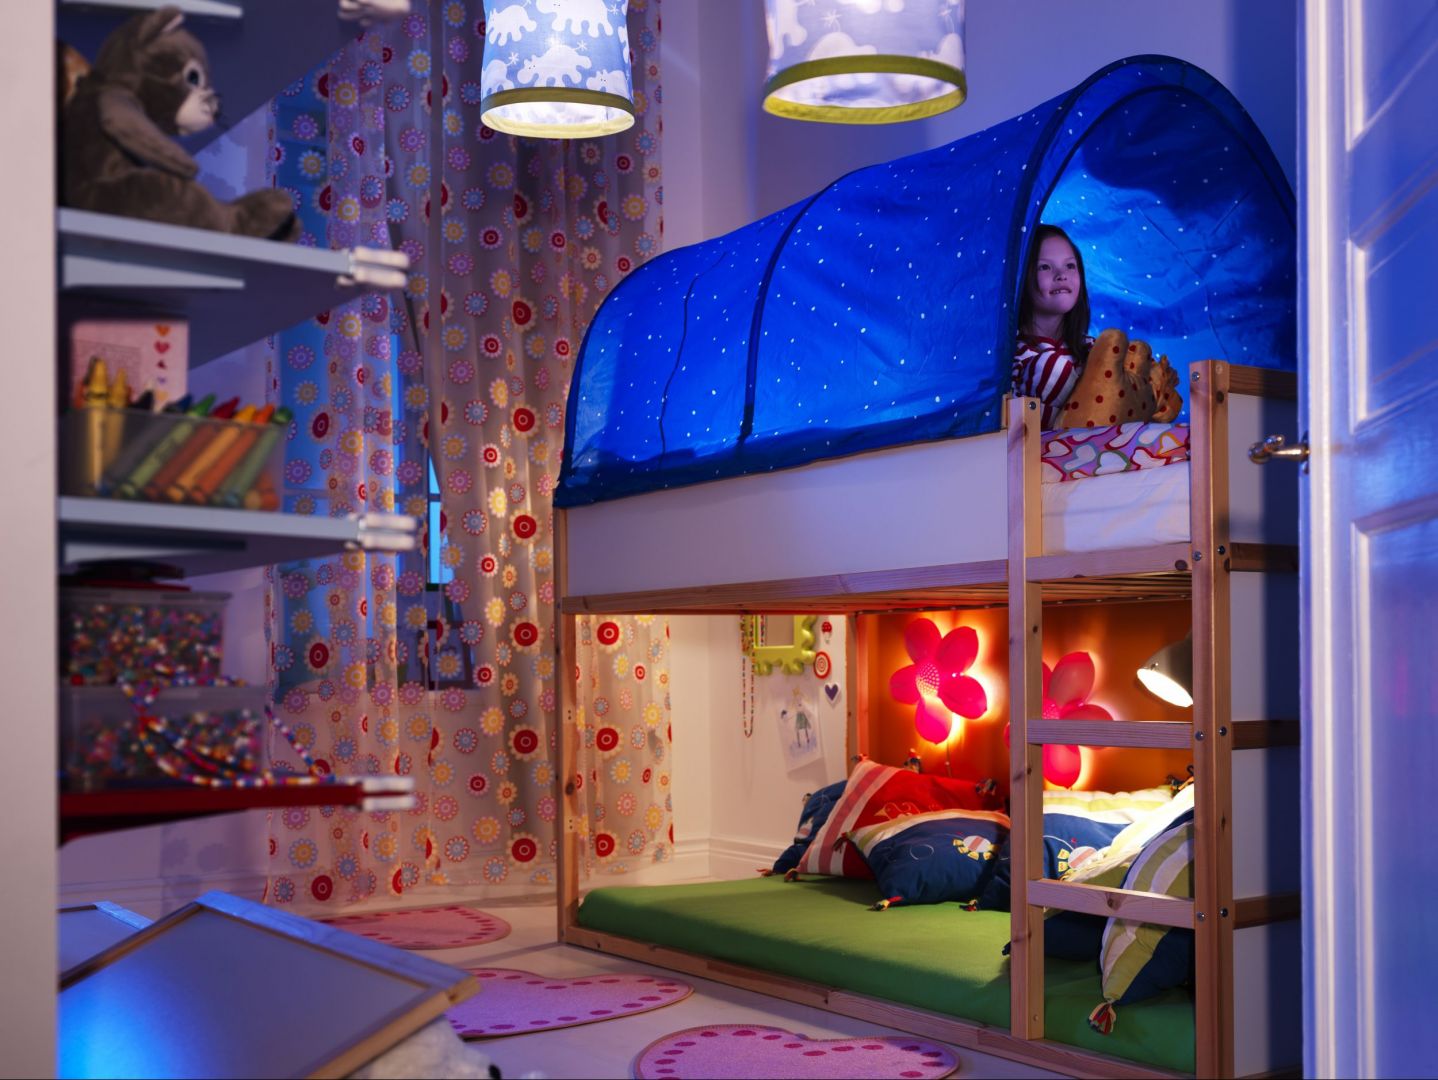 Łóżko piętrowe KURA można odwracać i używać na dwa sposoby, jako mebel piętrowy dla jednego dziecka lub dwóch. Cena łóżka 499 zł. Fot. IKEA